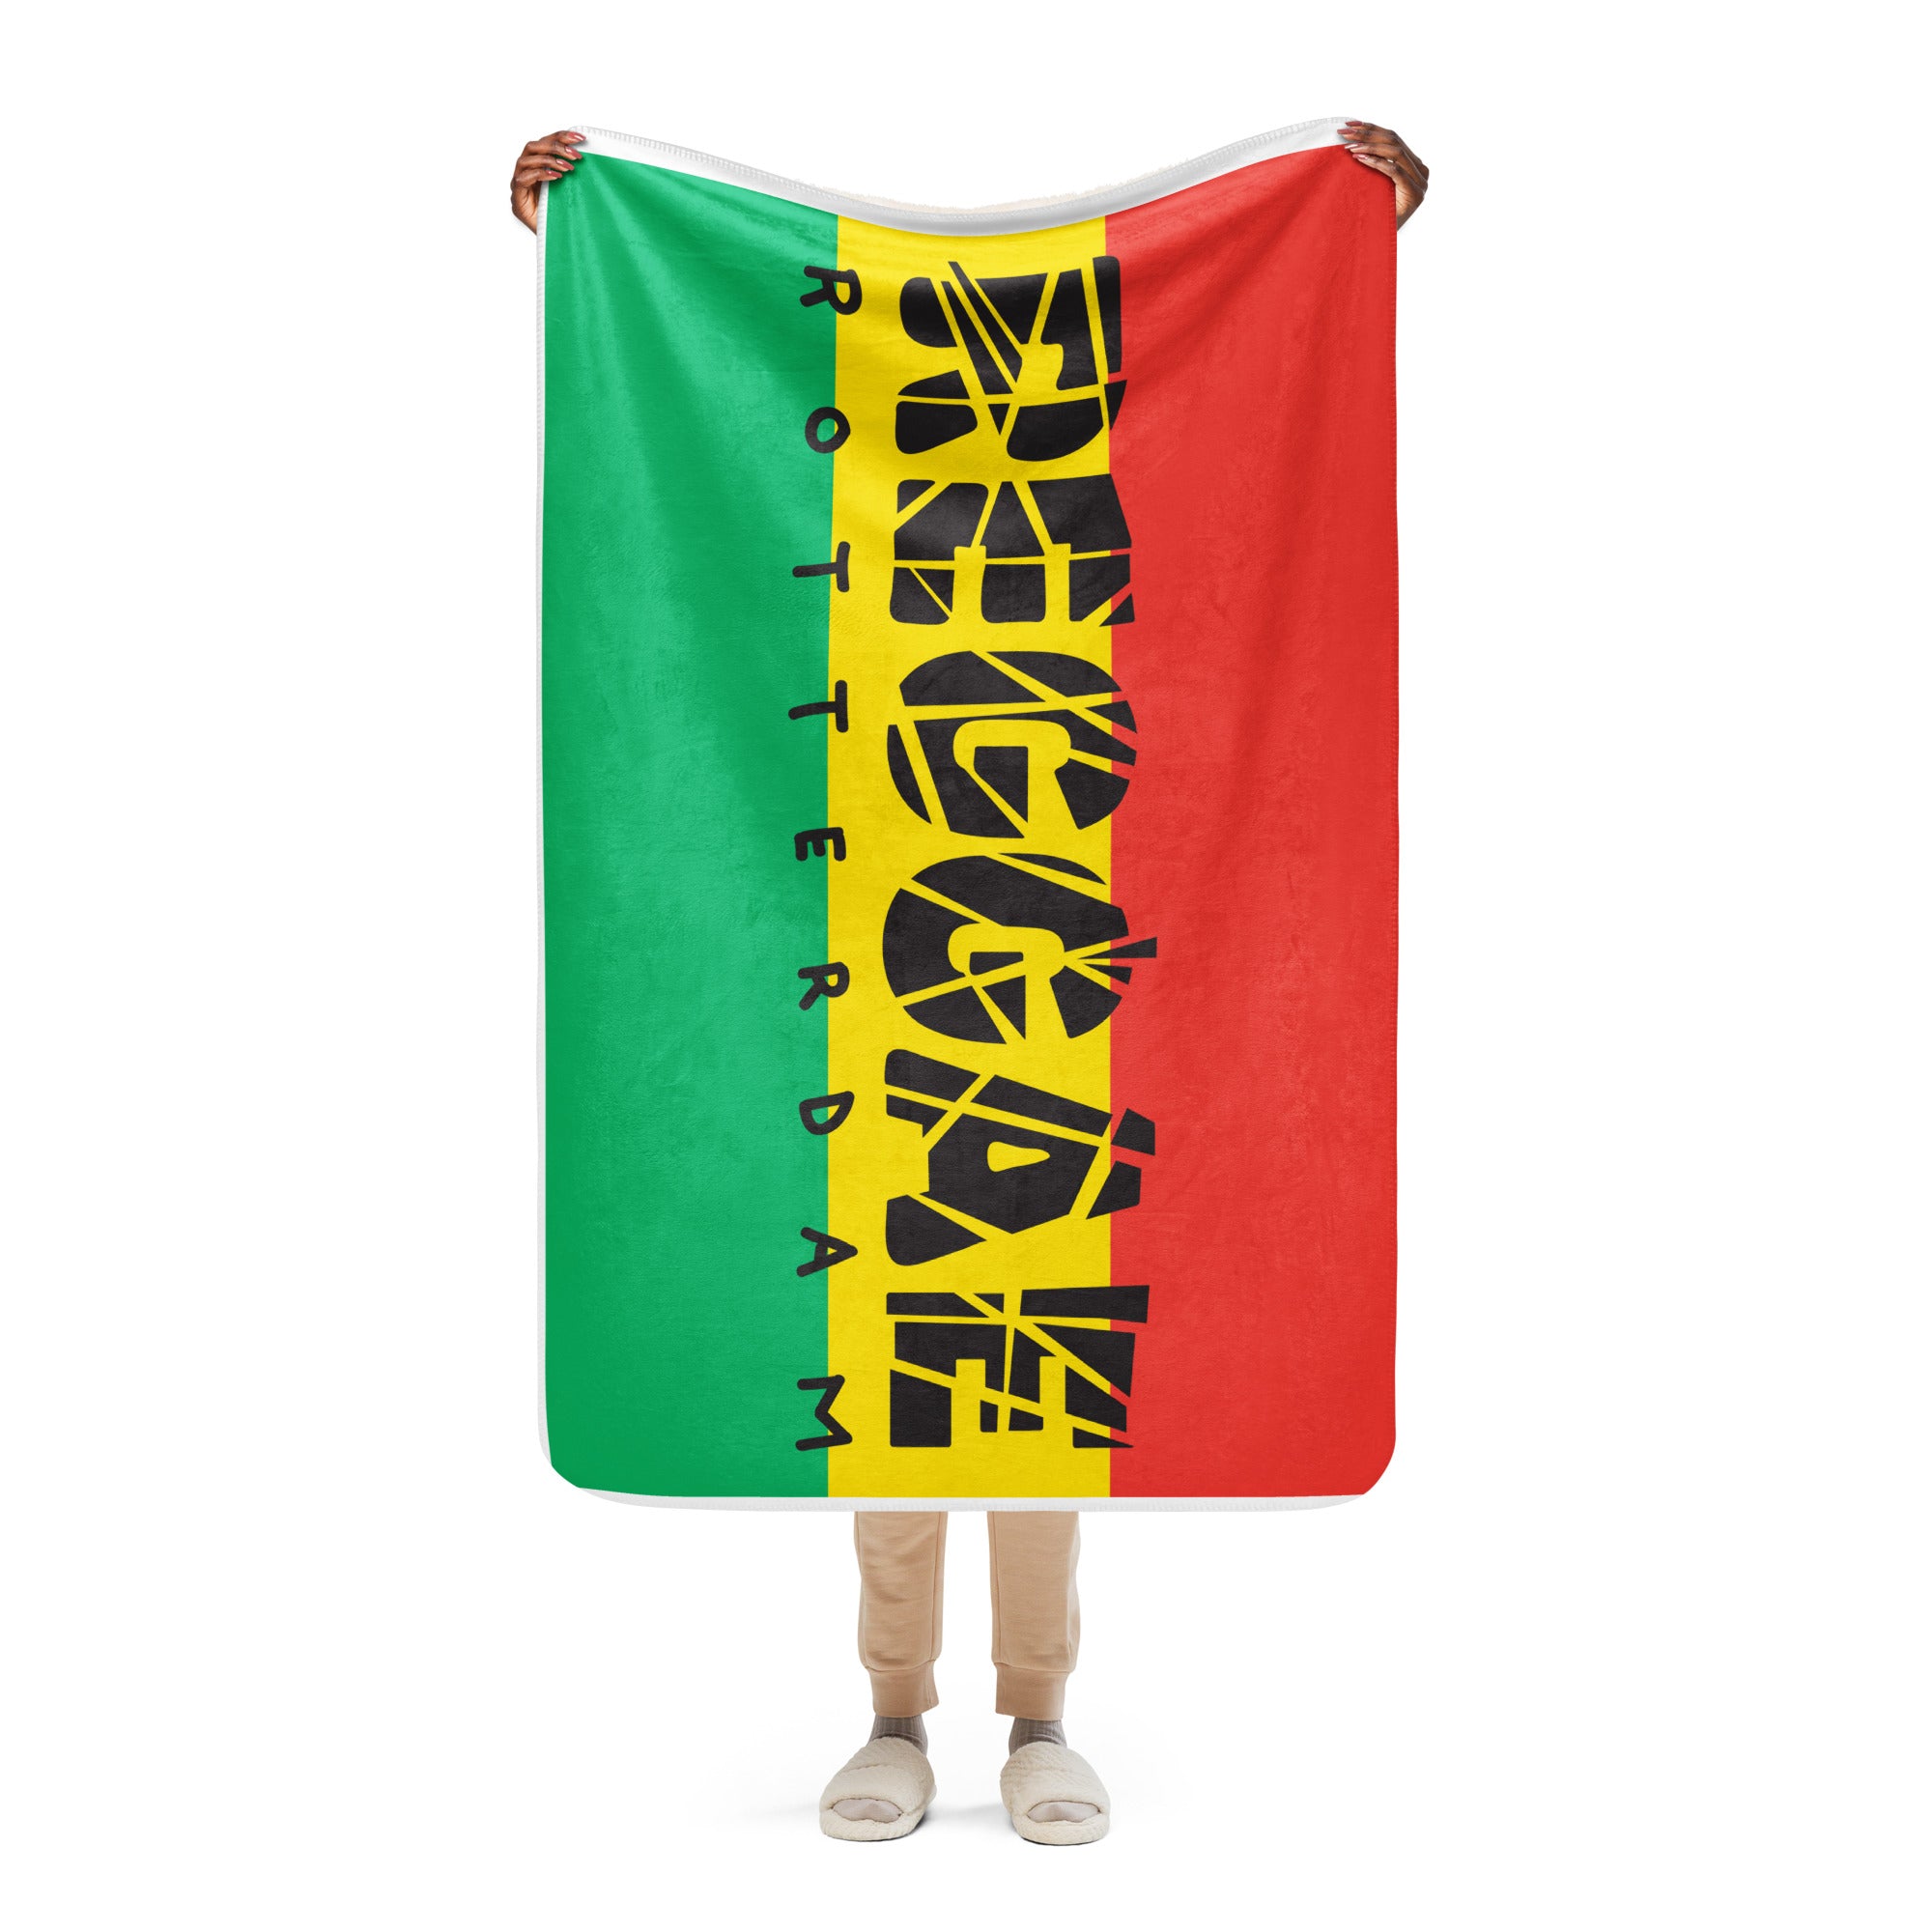 Reggae blanket